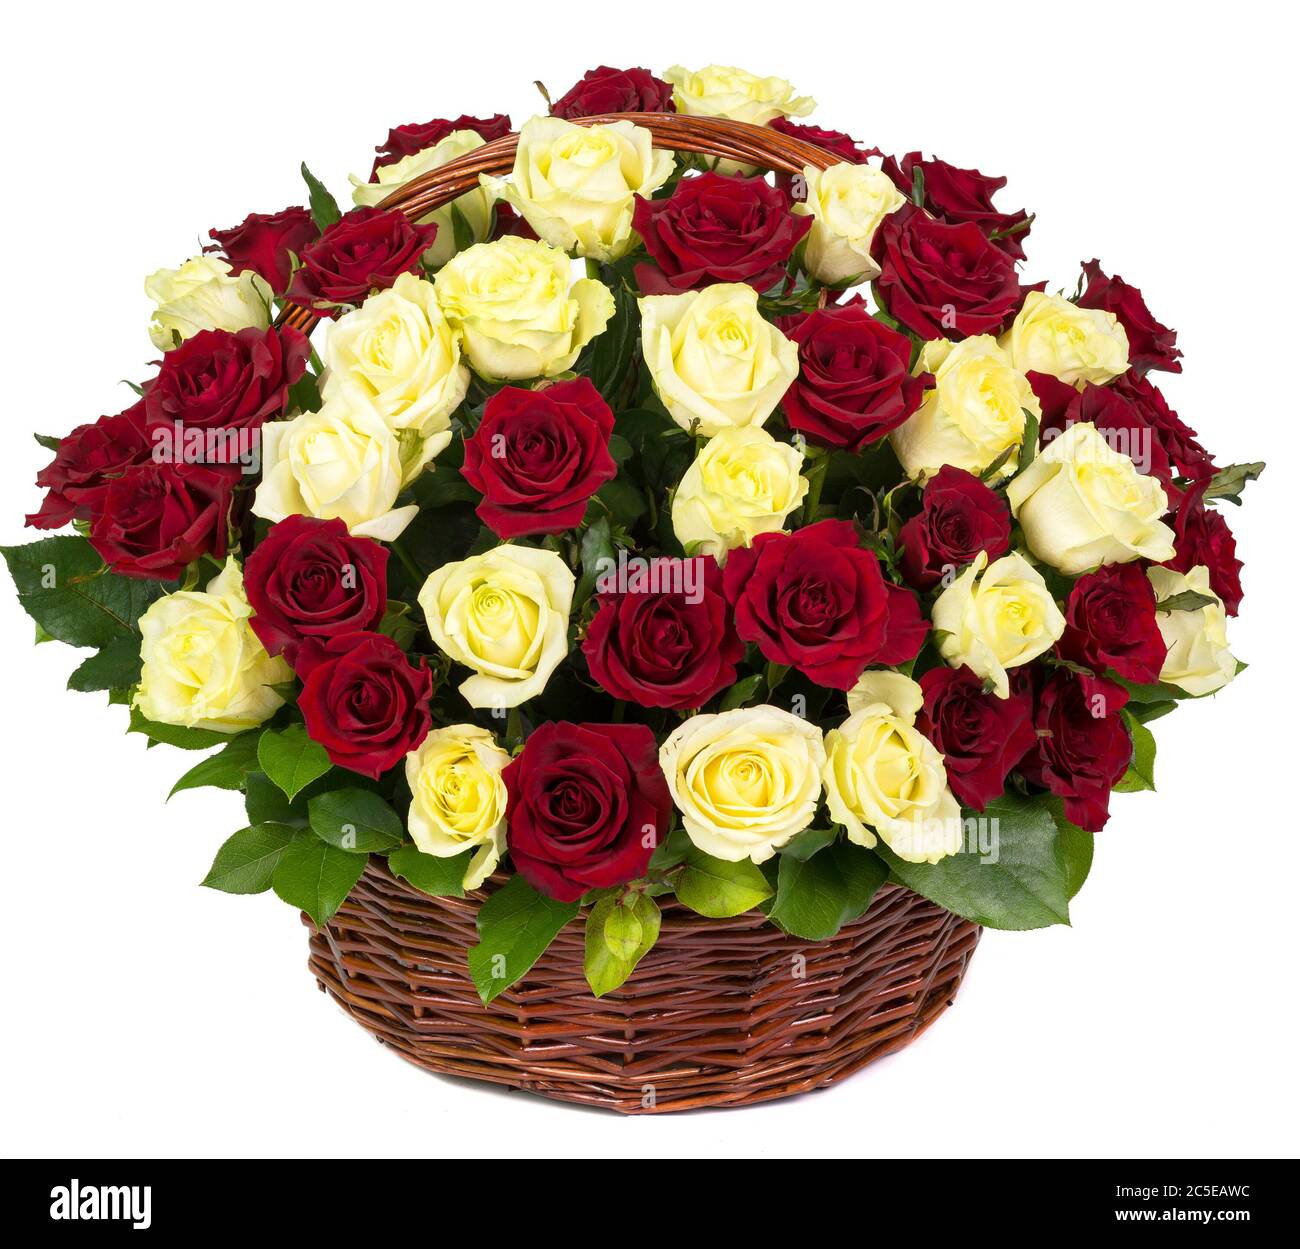 Natürliche rote und gelbe Rosen in einem Korb isoliert auf weißem Hintergrund Stockfoto